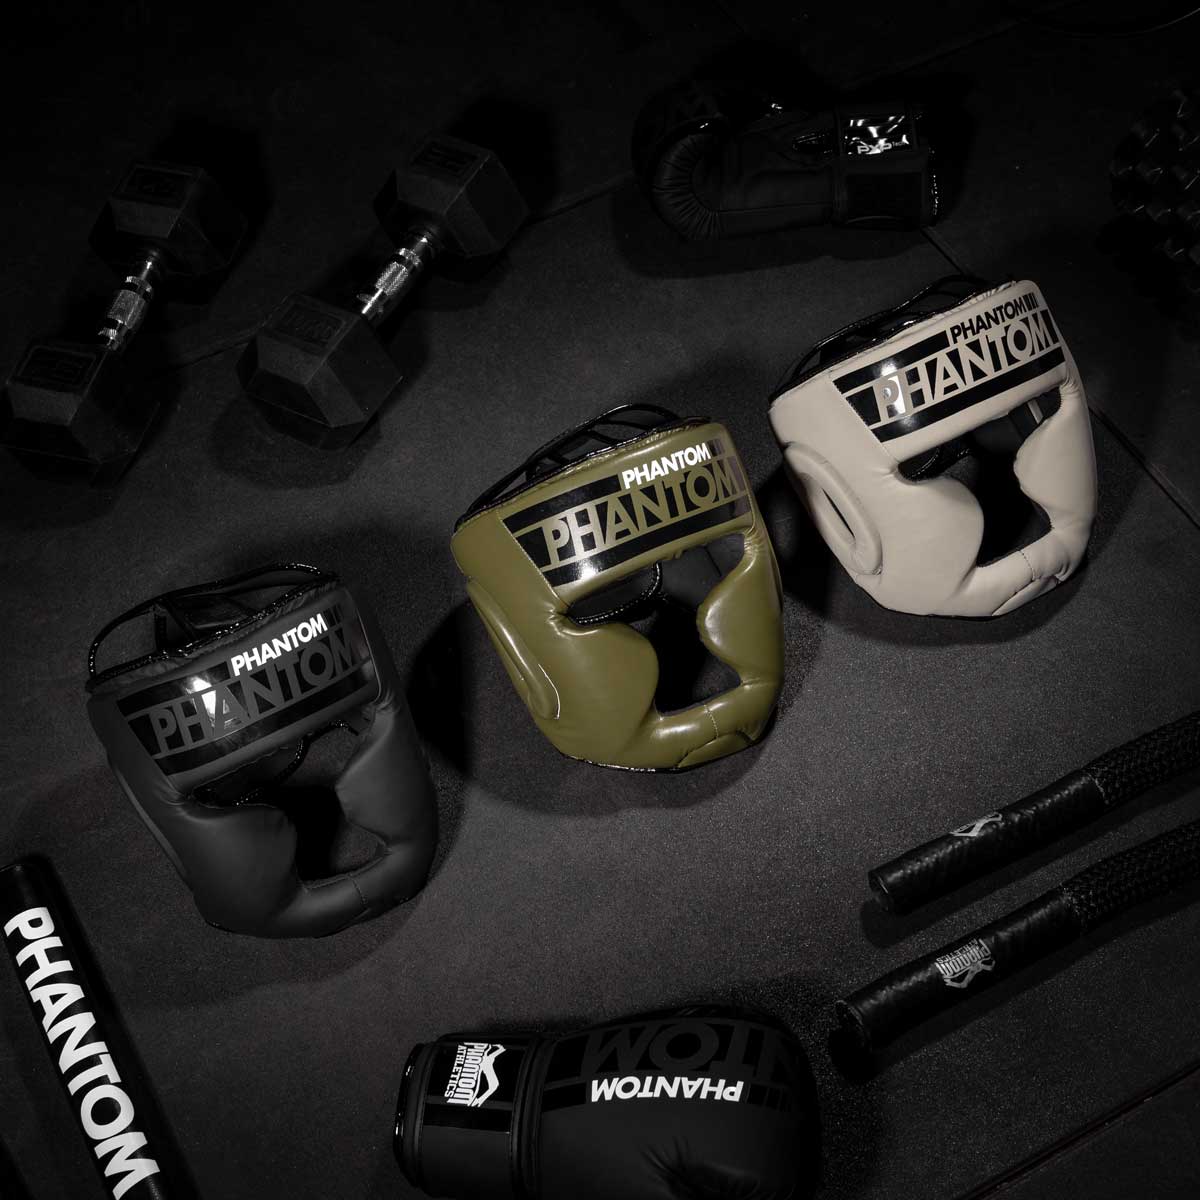 Den Phantom APEX Full Face Kopfschutz für Kampfsport gibt es in mehreren verschiedenen Farben.